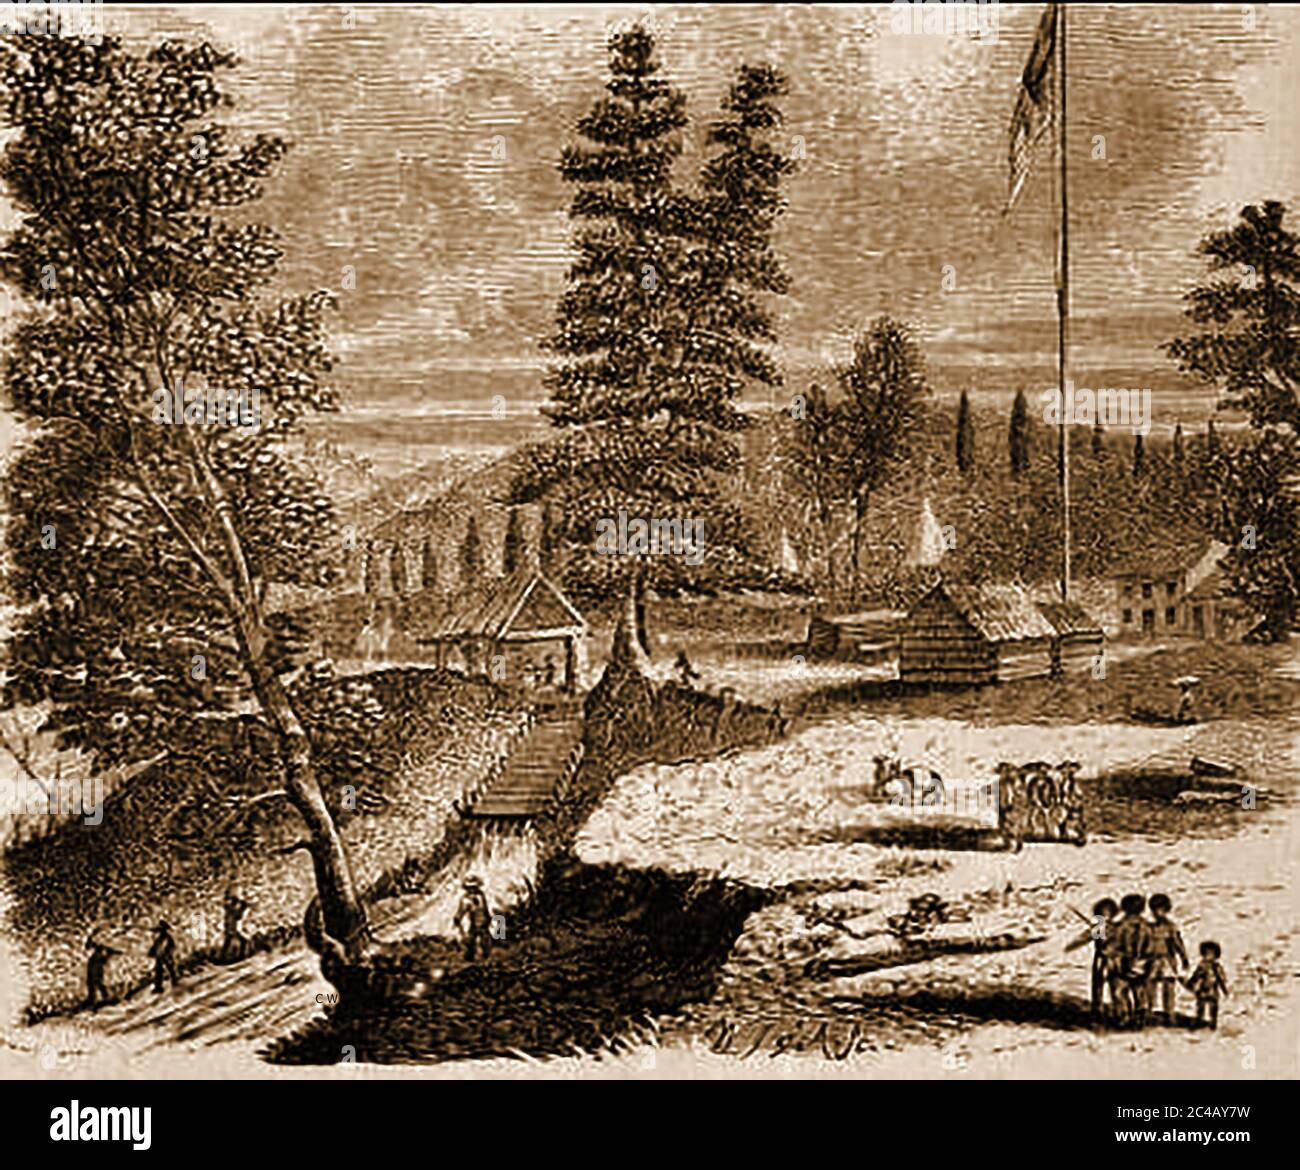 Ruée vers l'or californien - Sutter's Mill, Californie (milieu des années 1800) - Sutter's Mill était une scierie, propriété du pionnier du XIXe siècle John Sutter, où l'or a été trouvé, mettant en marche la ruée vers l'or de Californie. Le 24 janvier 1848, James Wilson Marshall, charpentier originaire du New Jersey, a trouvé des flocons d'or dans la rivière American, à la base des montagnes de la Sierra Nevada près de Coloma, en Californie. À l'époque, Marshall travaillait à la construction d'une scierie alimentée en eau appartenant à John Sutter. Henry Bigler et Azariah Smith ainsi que d'autres ouvriers d'usine étaient des vétérans du bataillon militaire volontaire Mormon. Banque D'Images